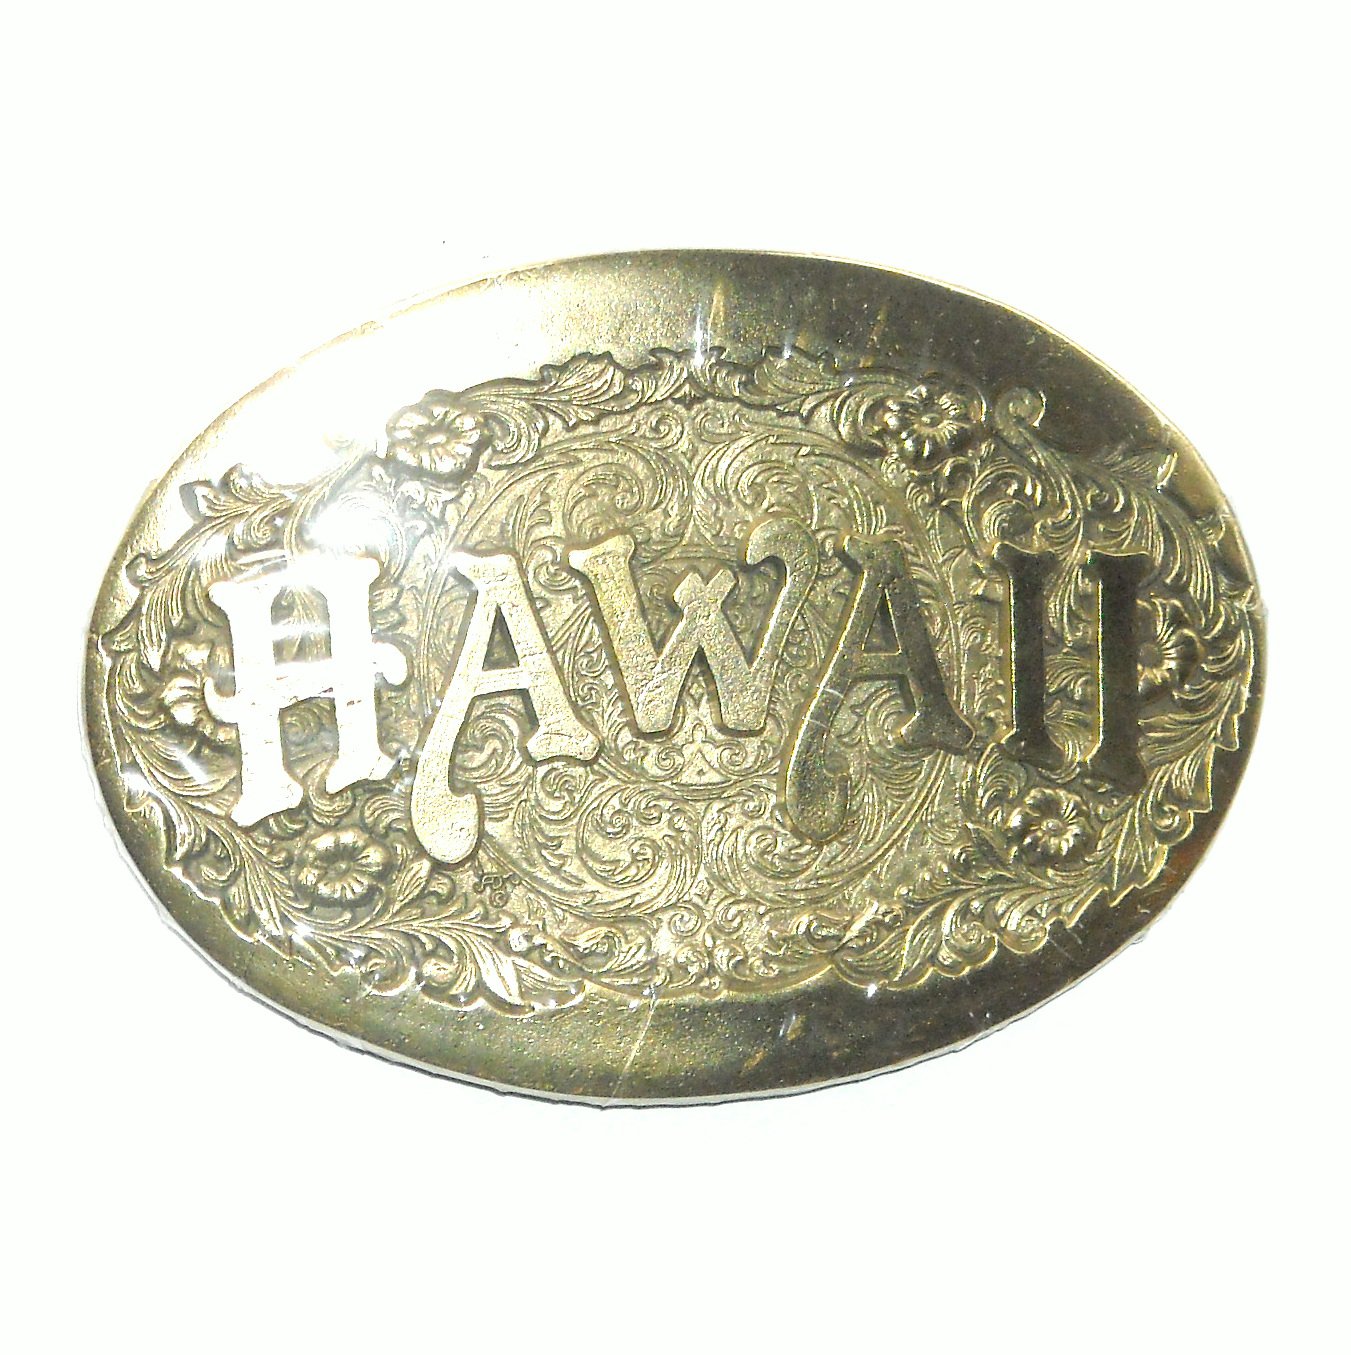 Hawaii Brass Belt Buckle